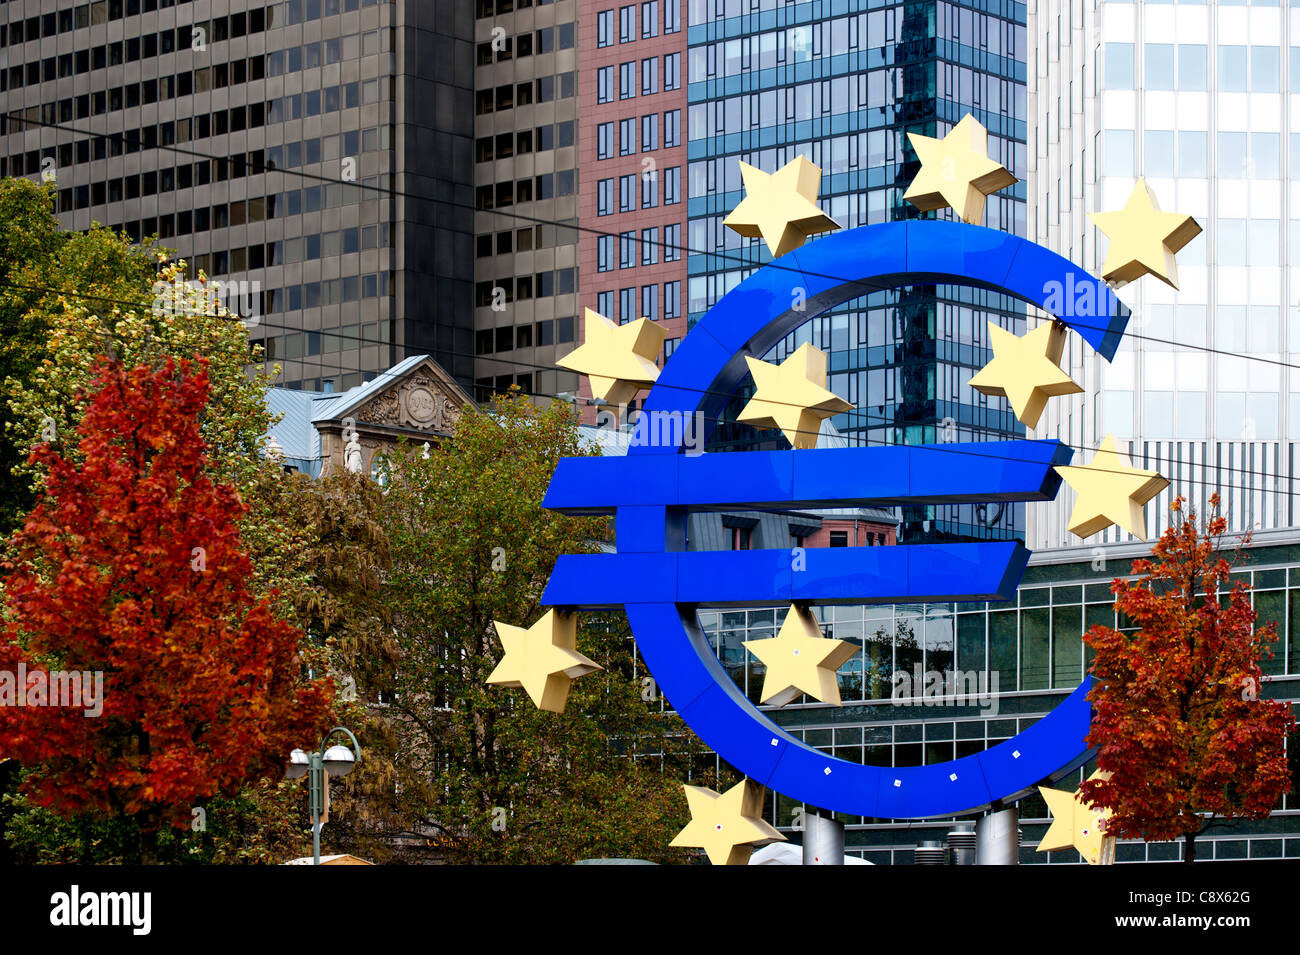 Symbole de l'euro face à la BCE, Banque centrale européenne, Willy-Brandt-Platz square à Frankfurt am Main, Allemagne Banque D'Images